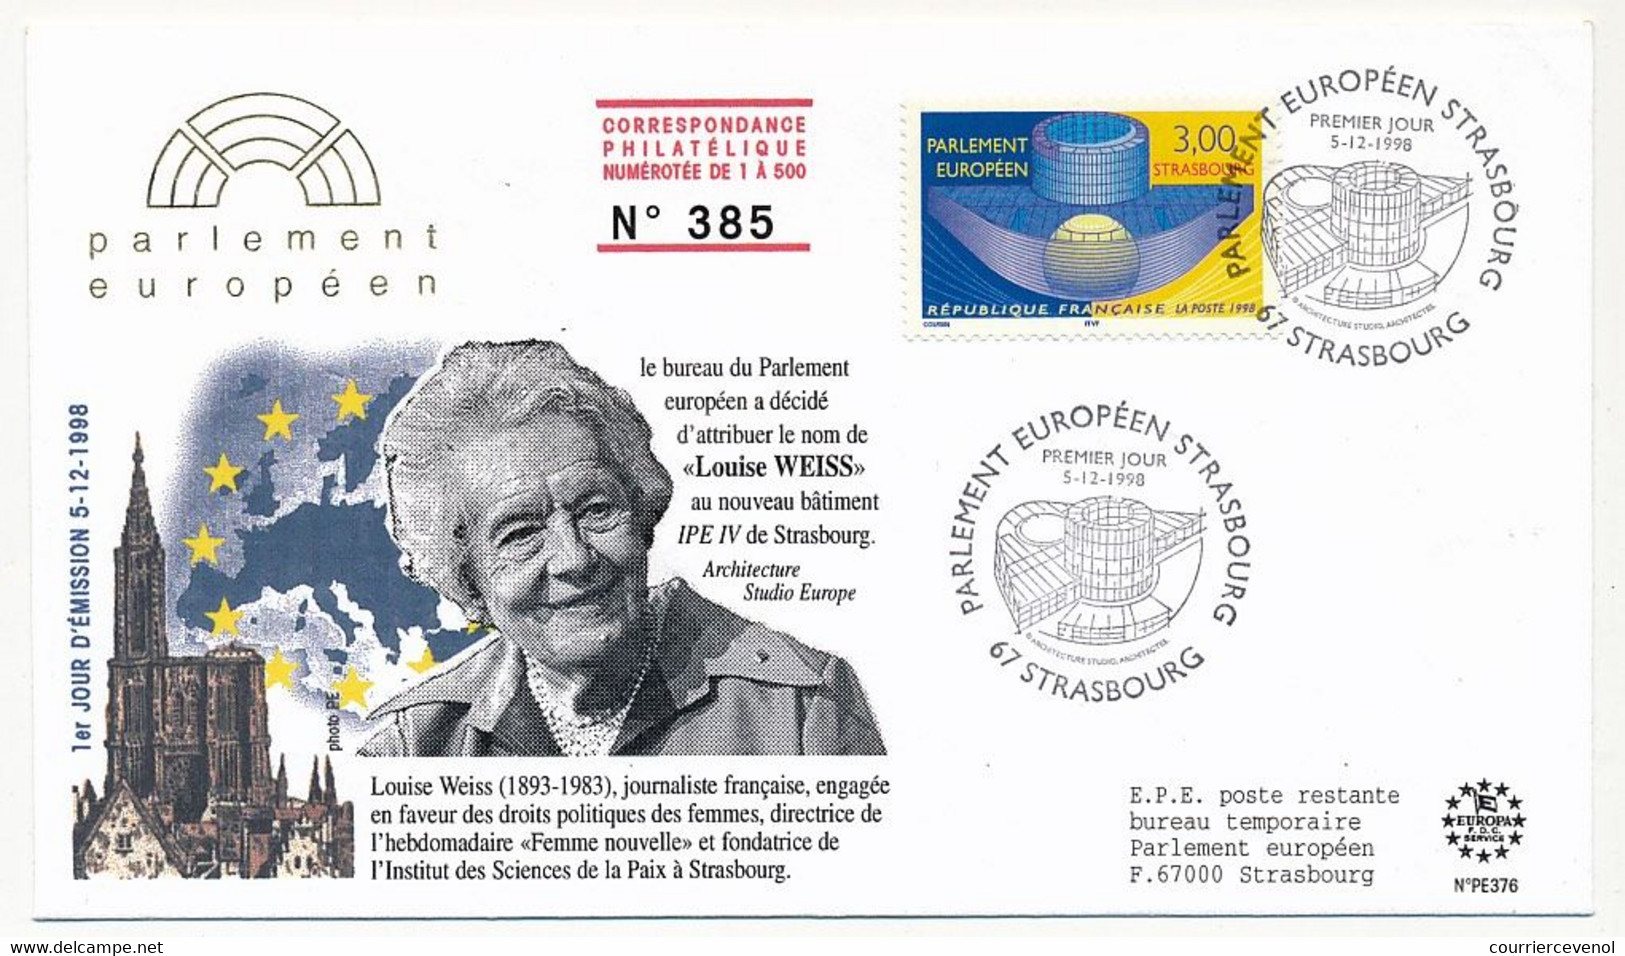 FRANCE - Env. FDC - 3,00F Parlement Européen - Premier Jour Strasbourg 5/12/98 - Illustrée Louise Weiss - 1990-1999